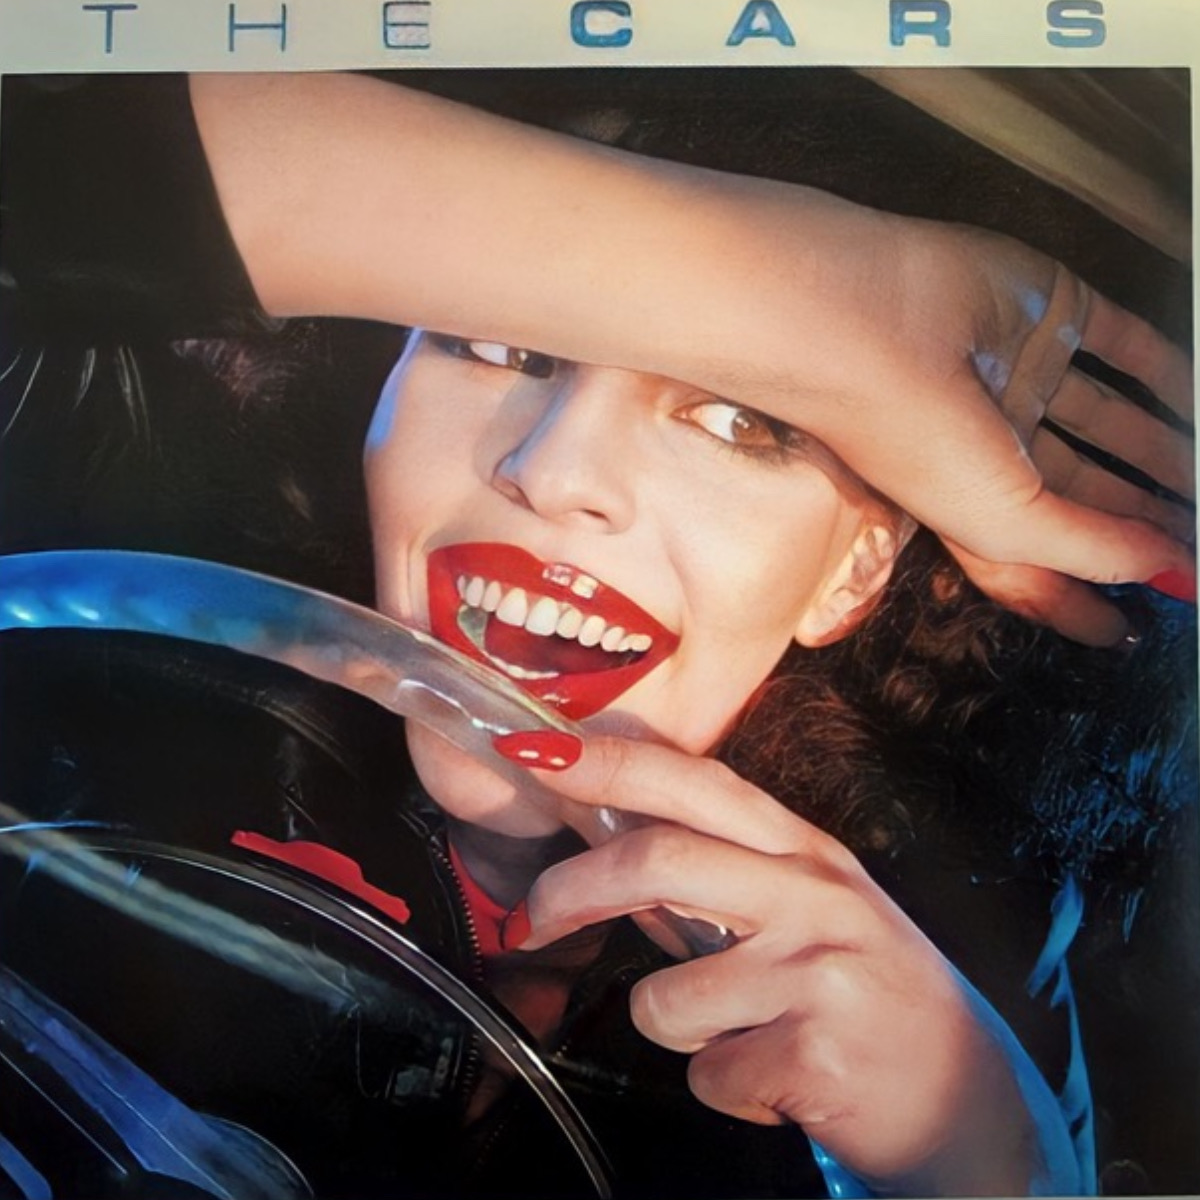 Pochette de l'album "The Cars" du groupe The Cars